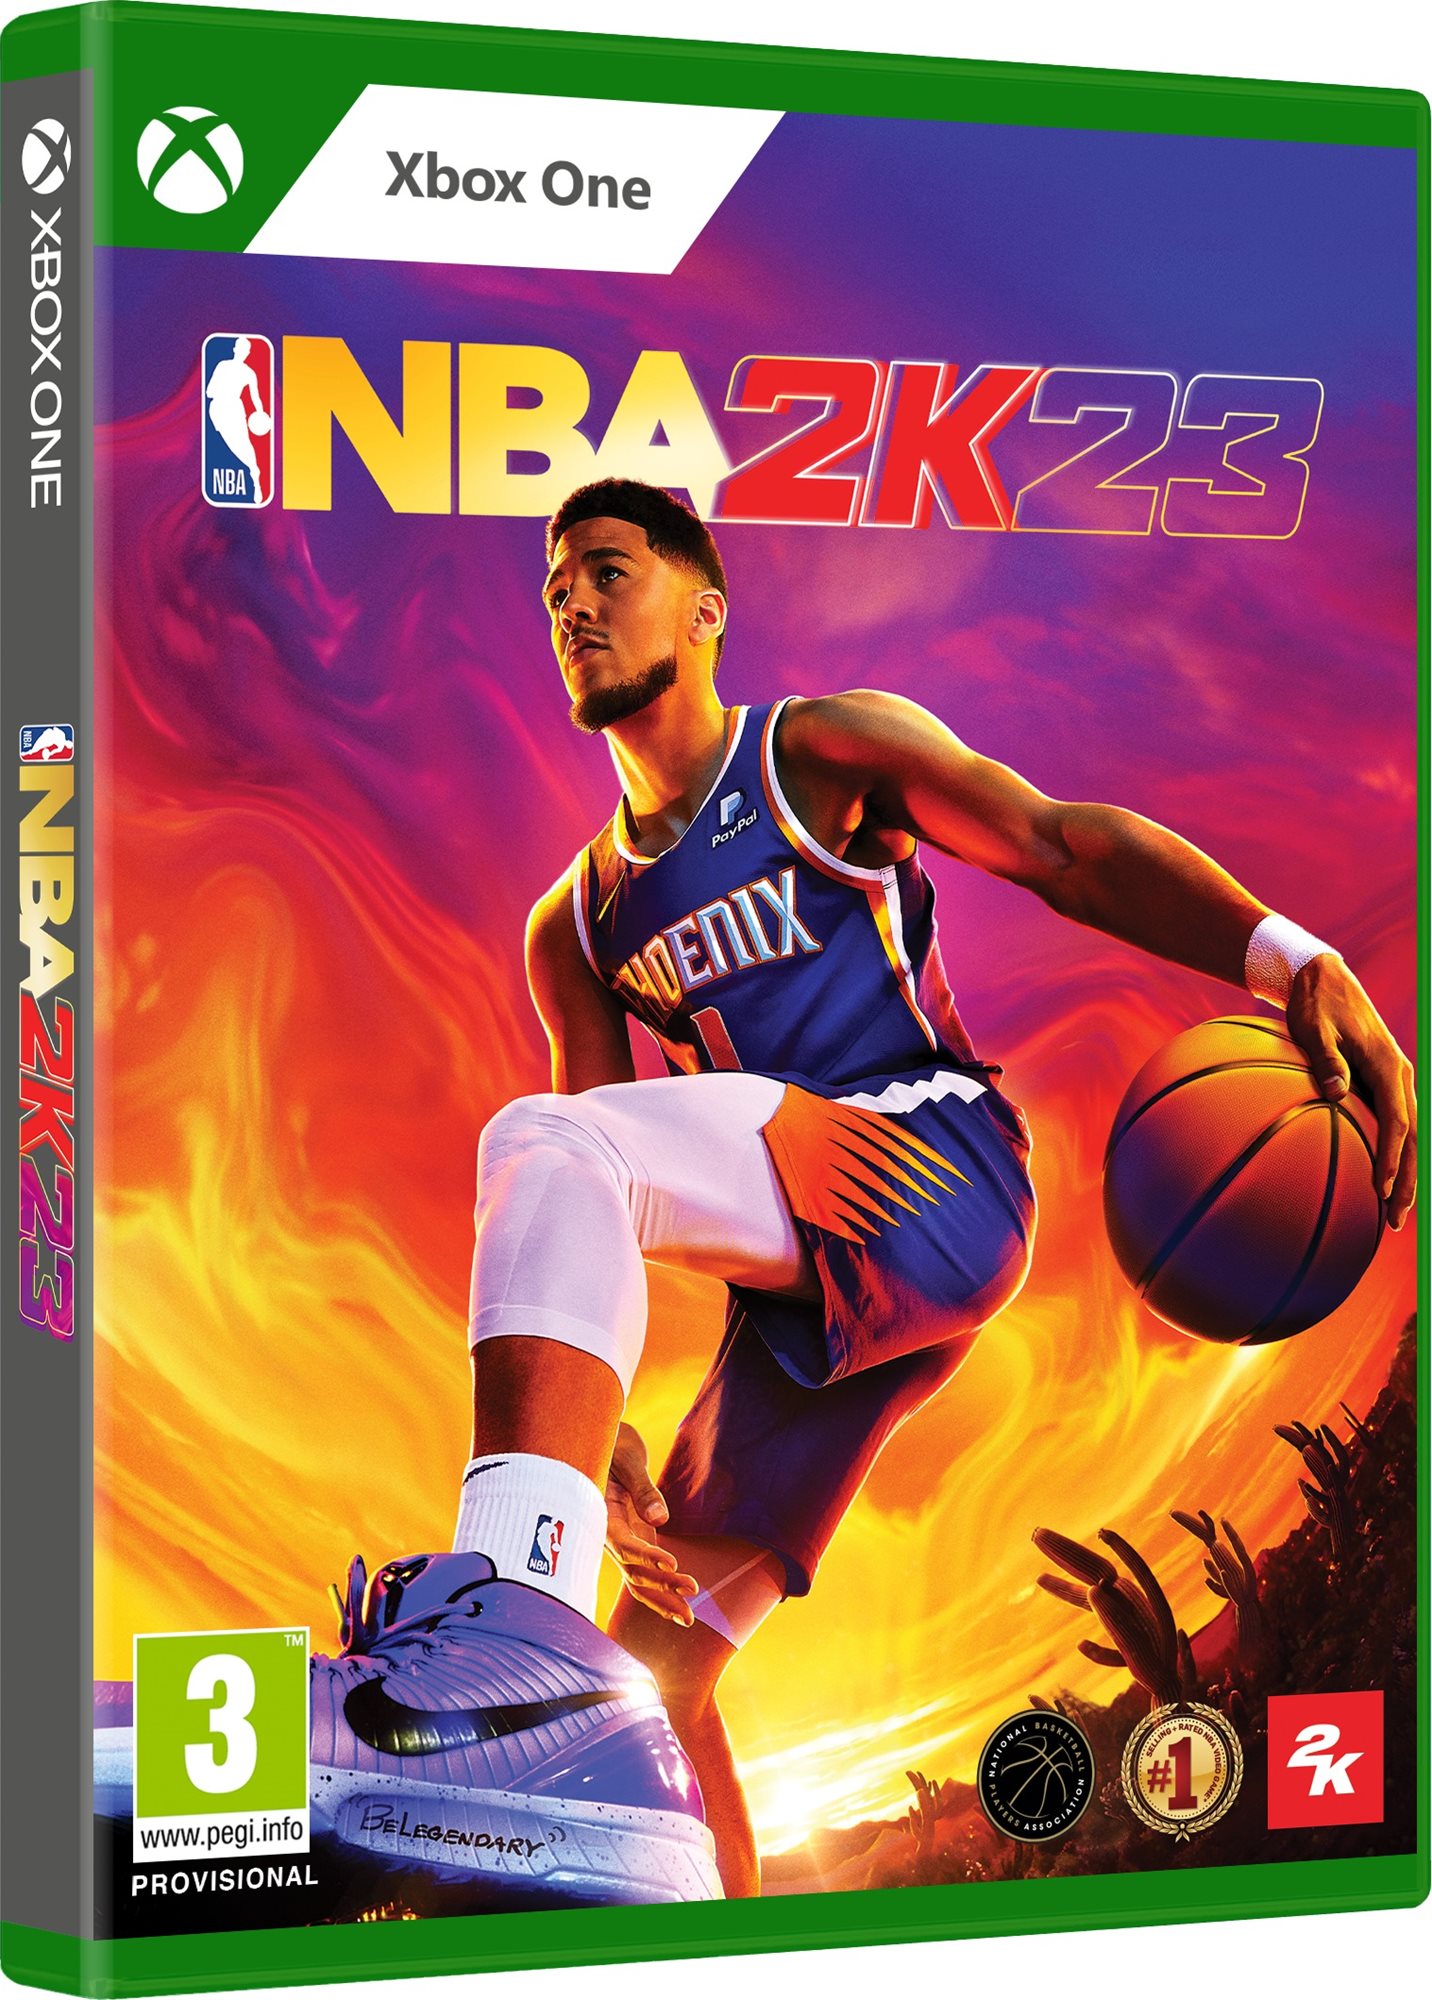 Konzol játék NBA 2K23 - Xbox Series